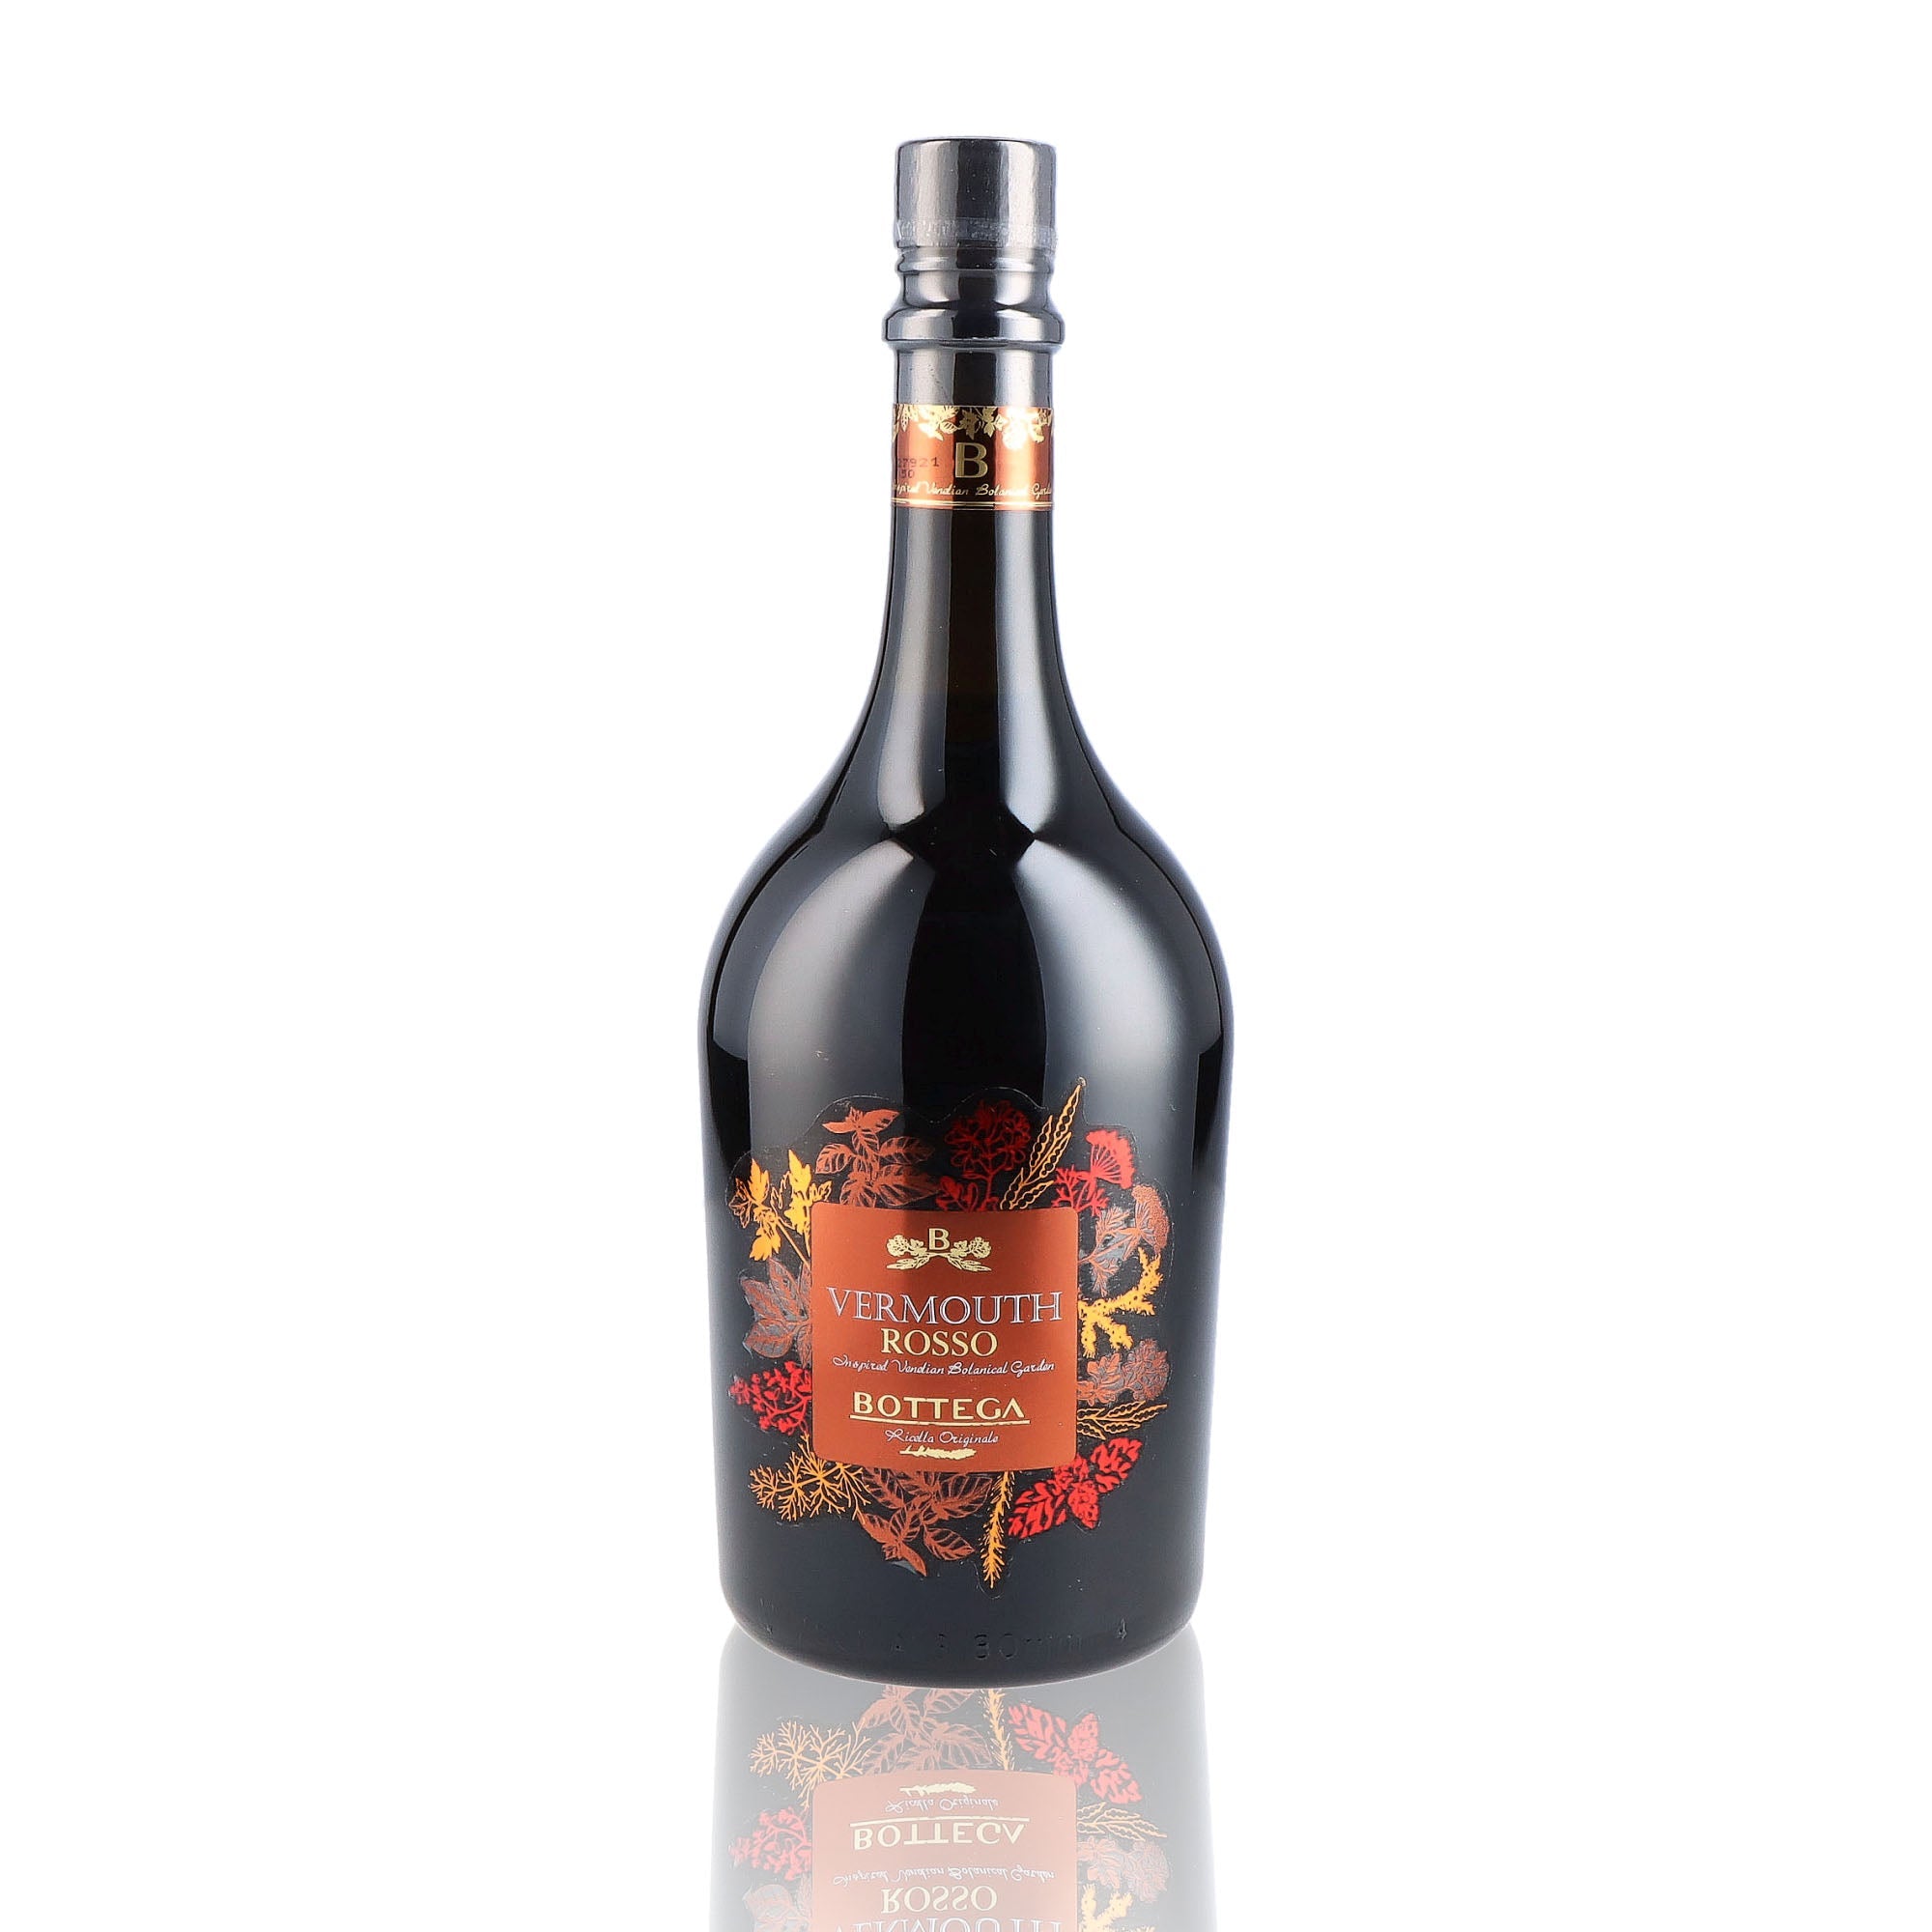 Une bouteille de vermouth, de la marque Bottega, nommée Rosso.